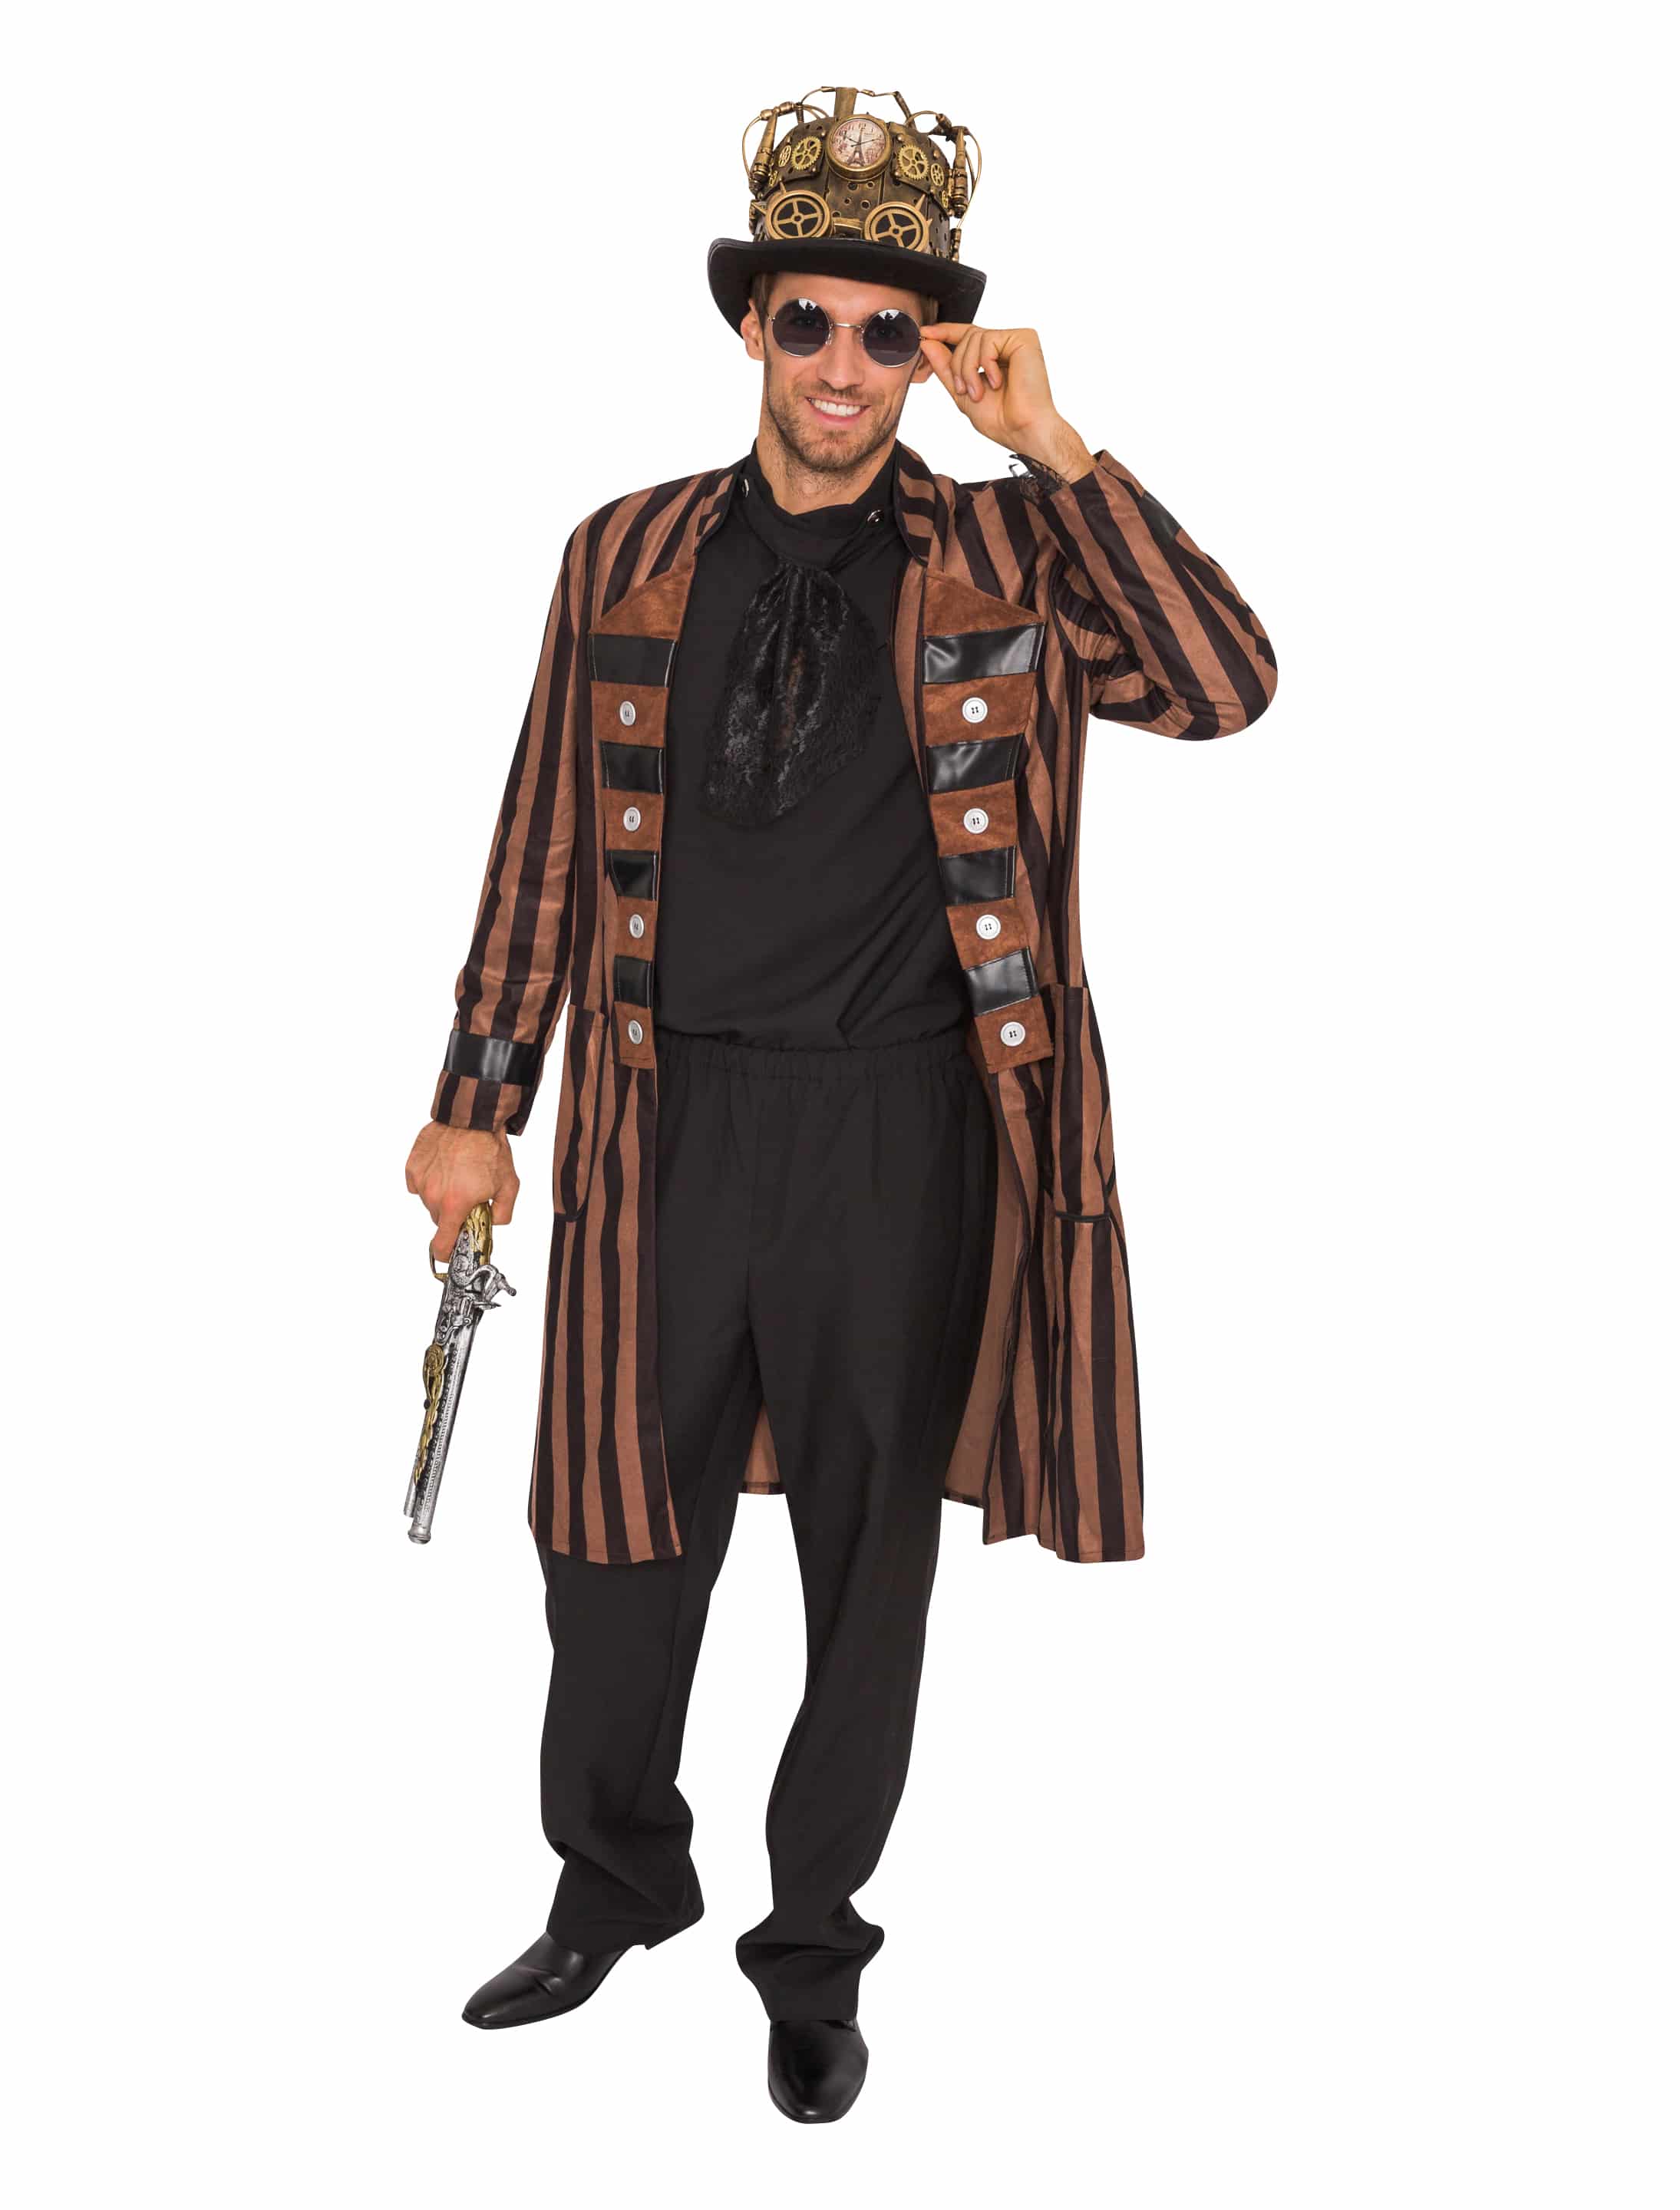 Mantel Steampunk mit Streifen Herren braun/schwarz XL